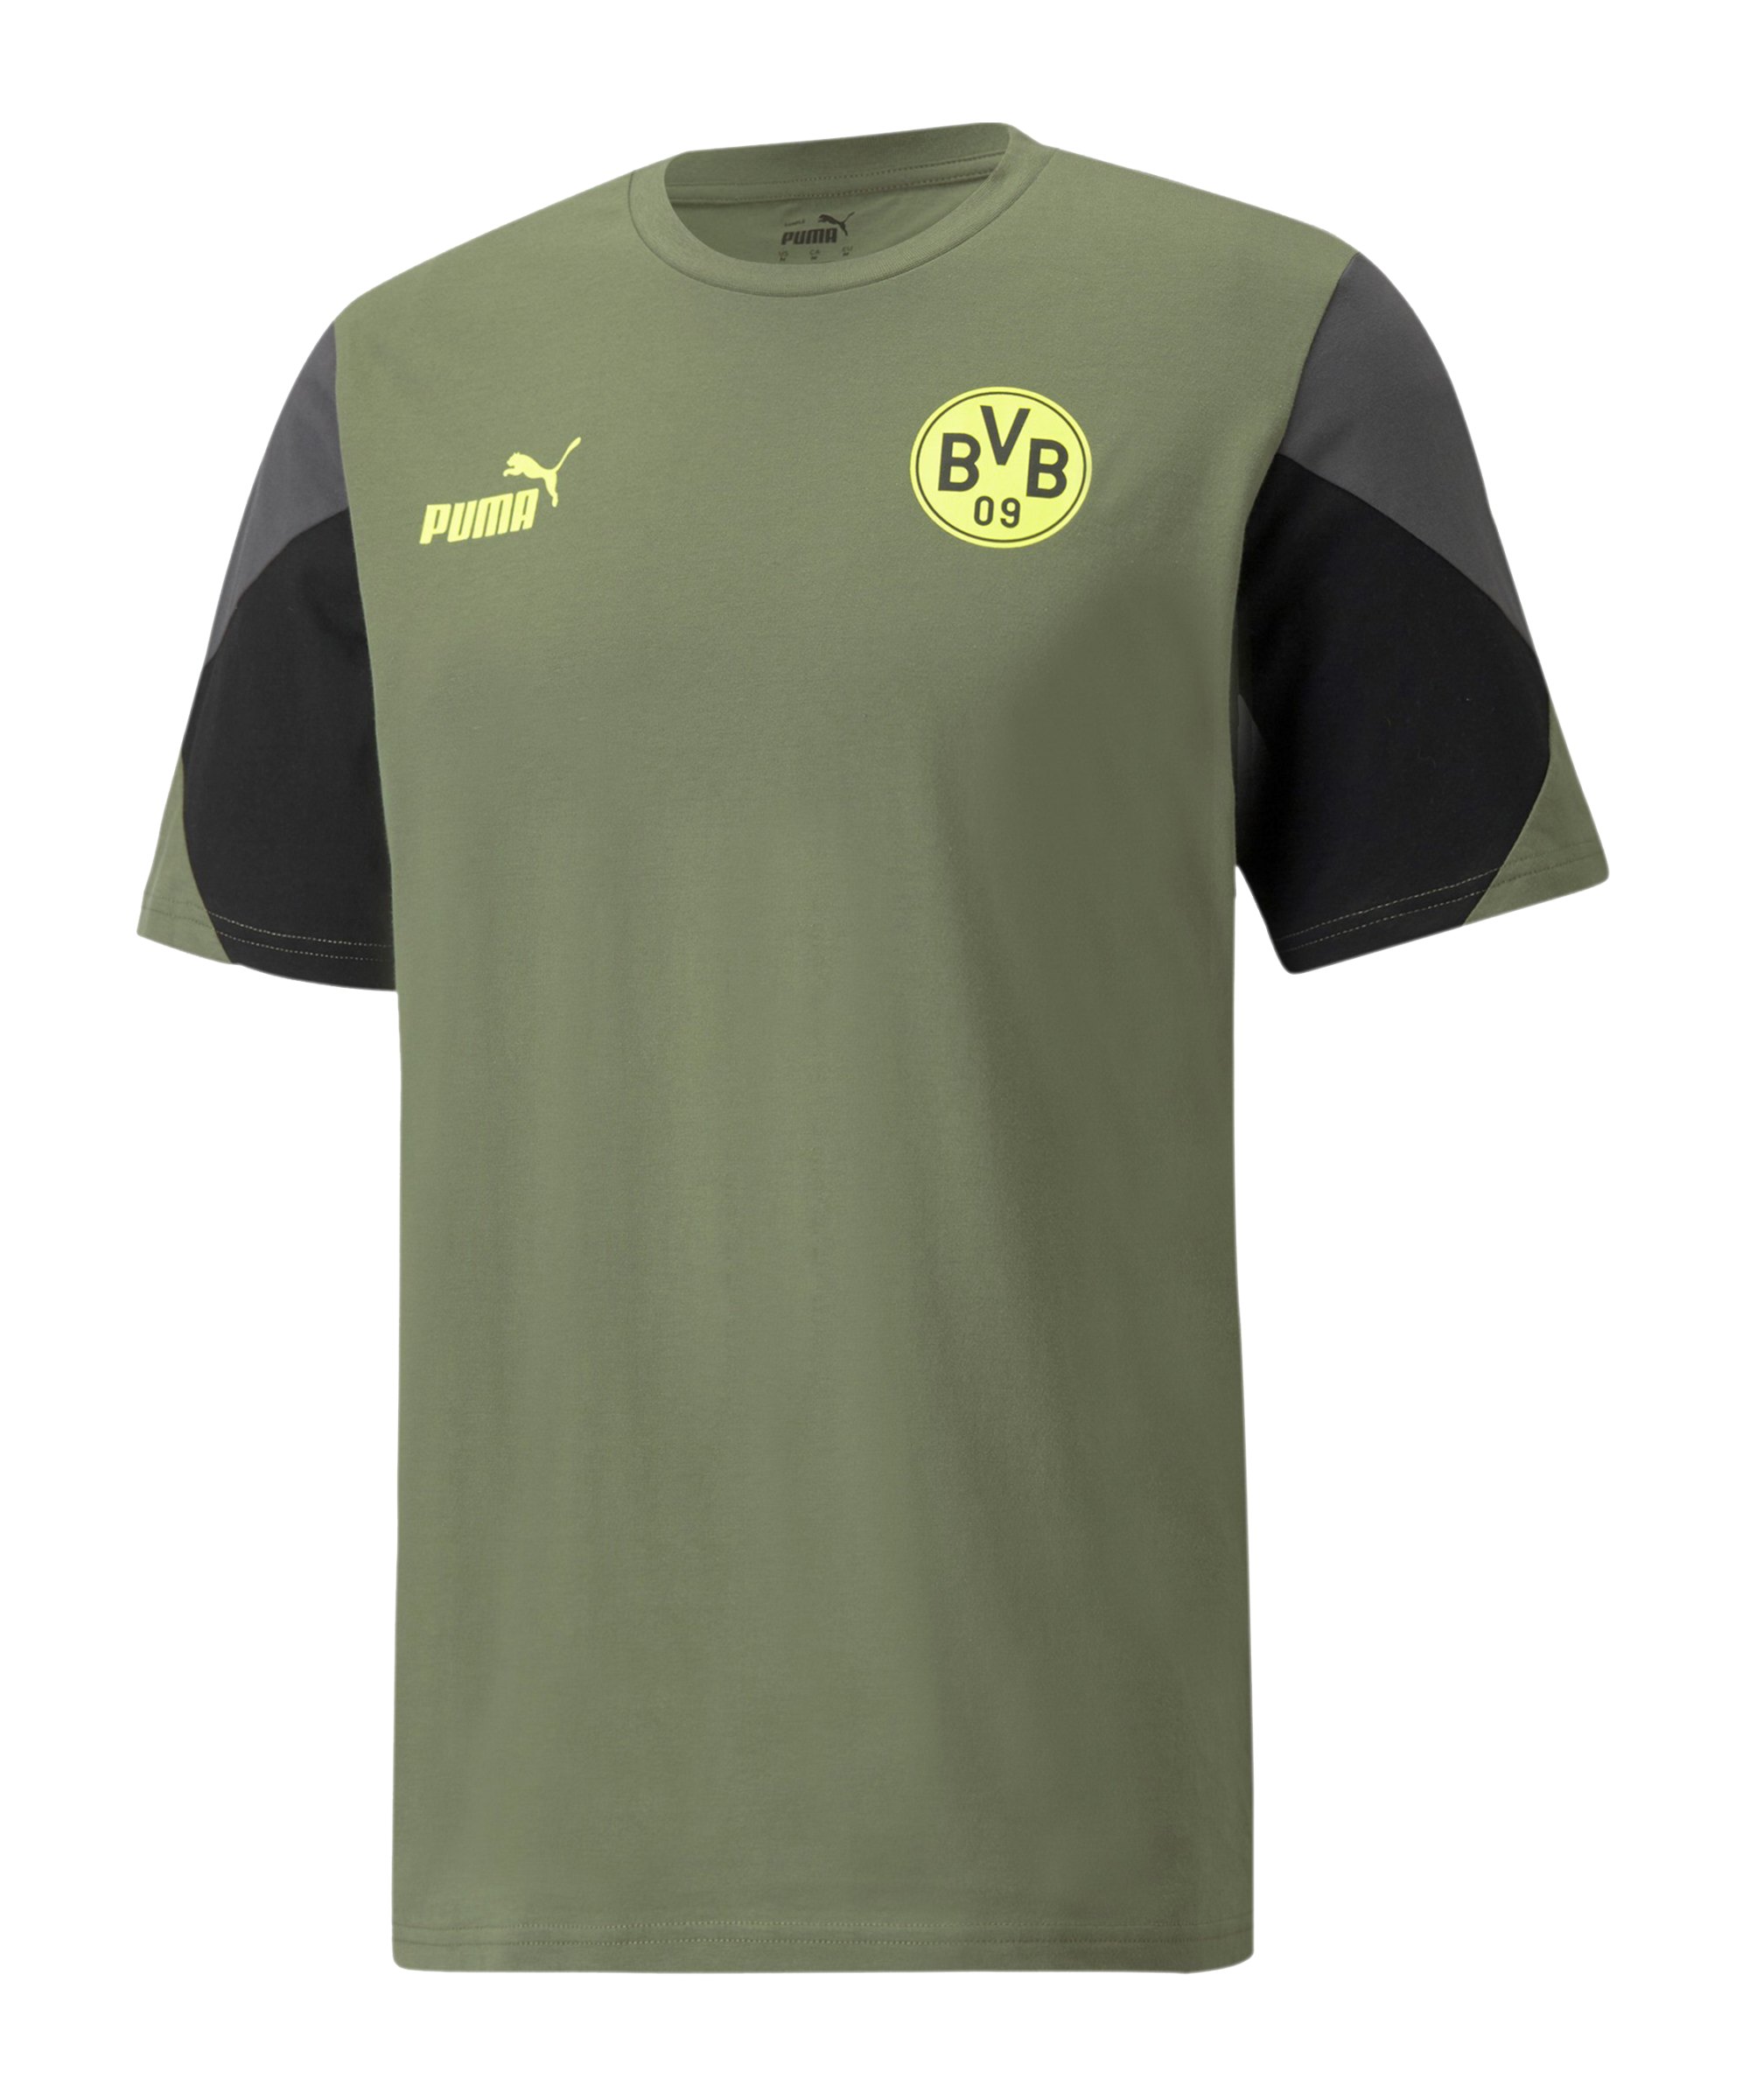 PUMA BVB Dortmund FtblCulture T-Shirt Grün F09 - gruen